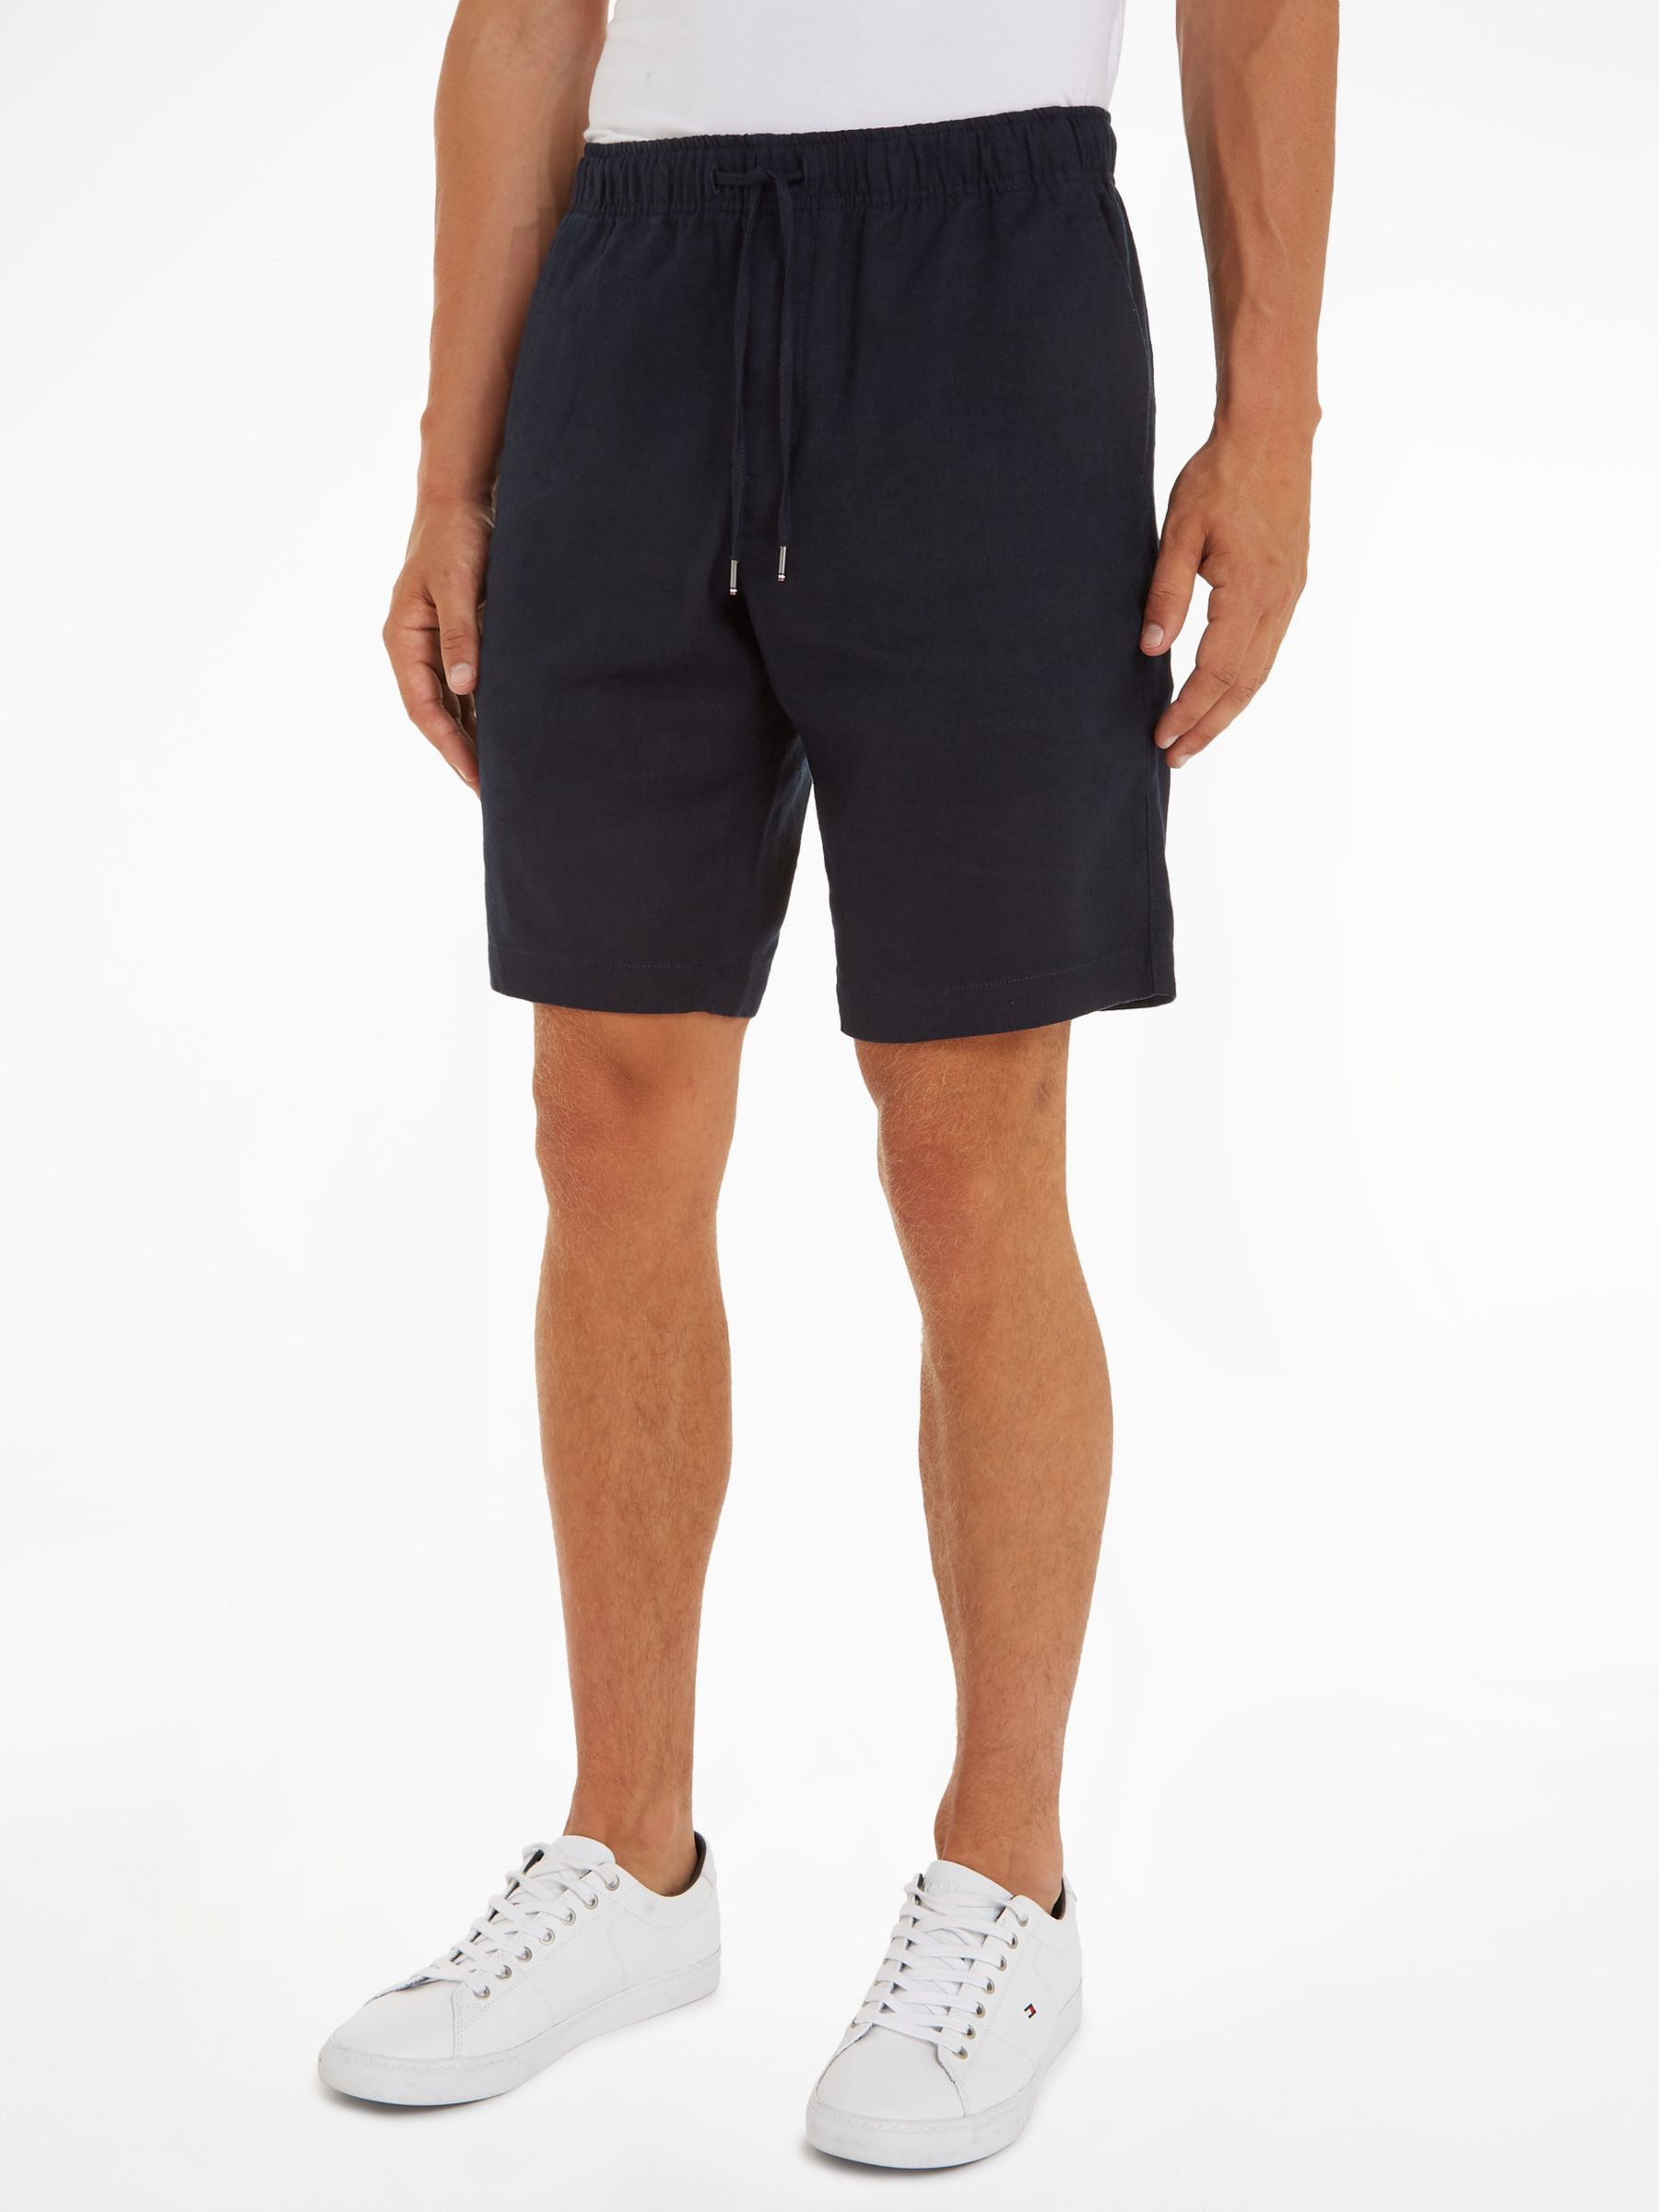 Tommy Hilfiger Harlem Linen Shorts, Desert Sky, 40R